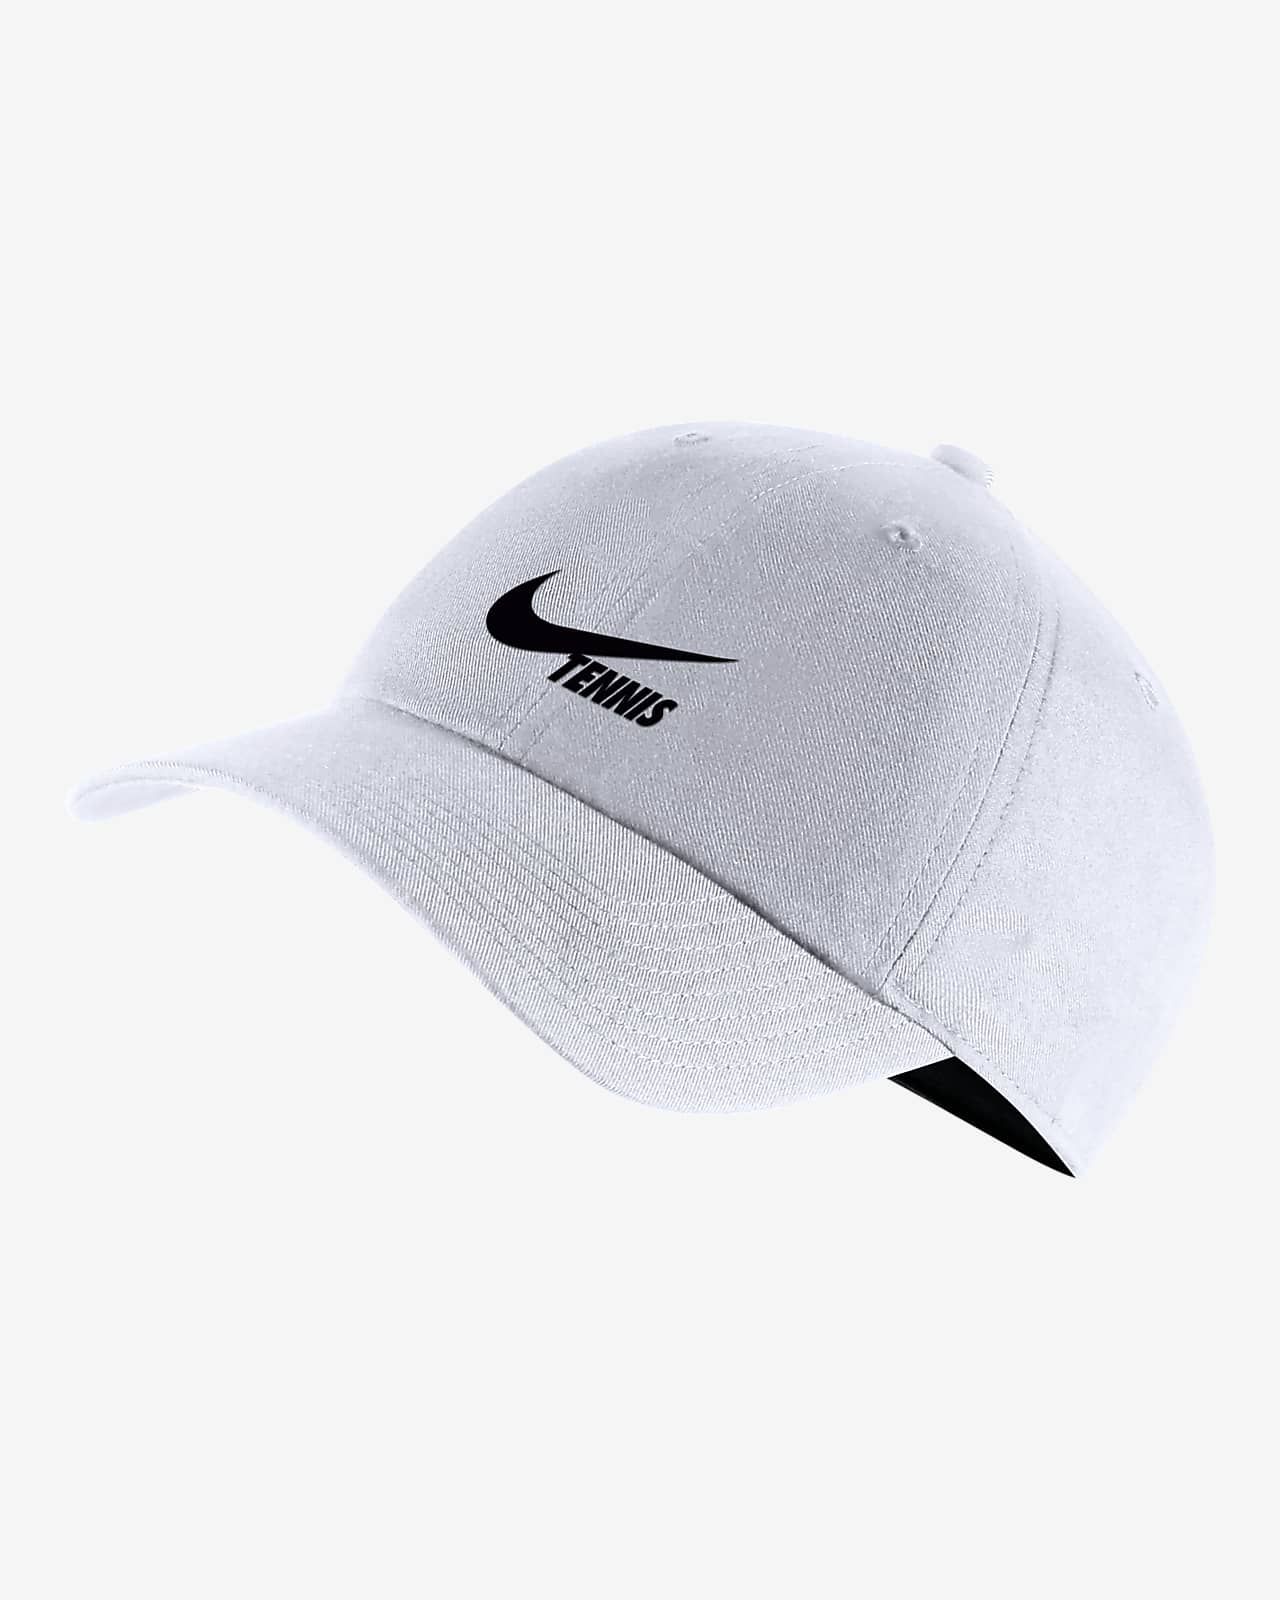 Tennis Campus Cap | Nike (US)